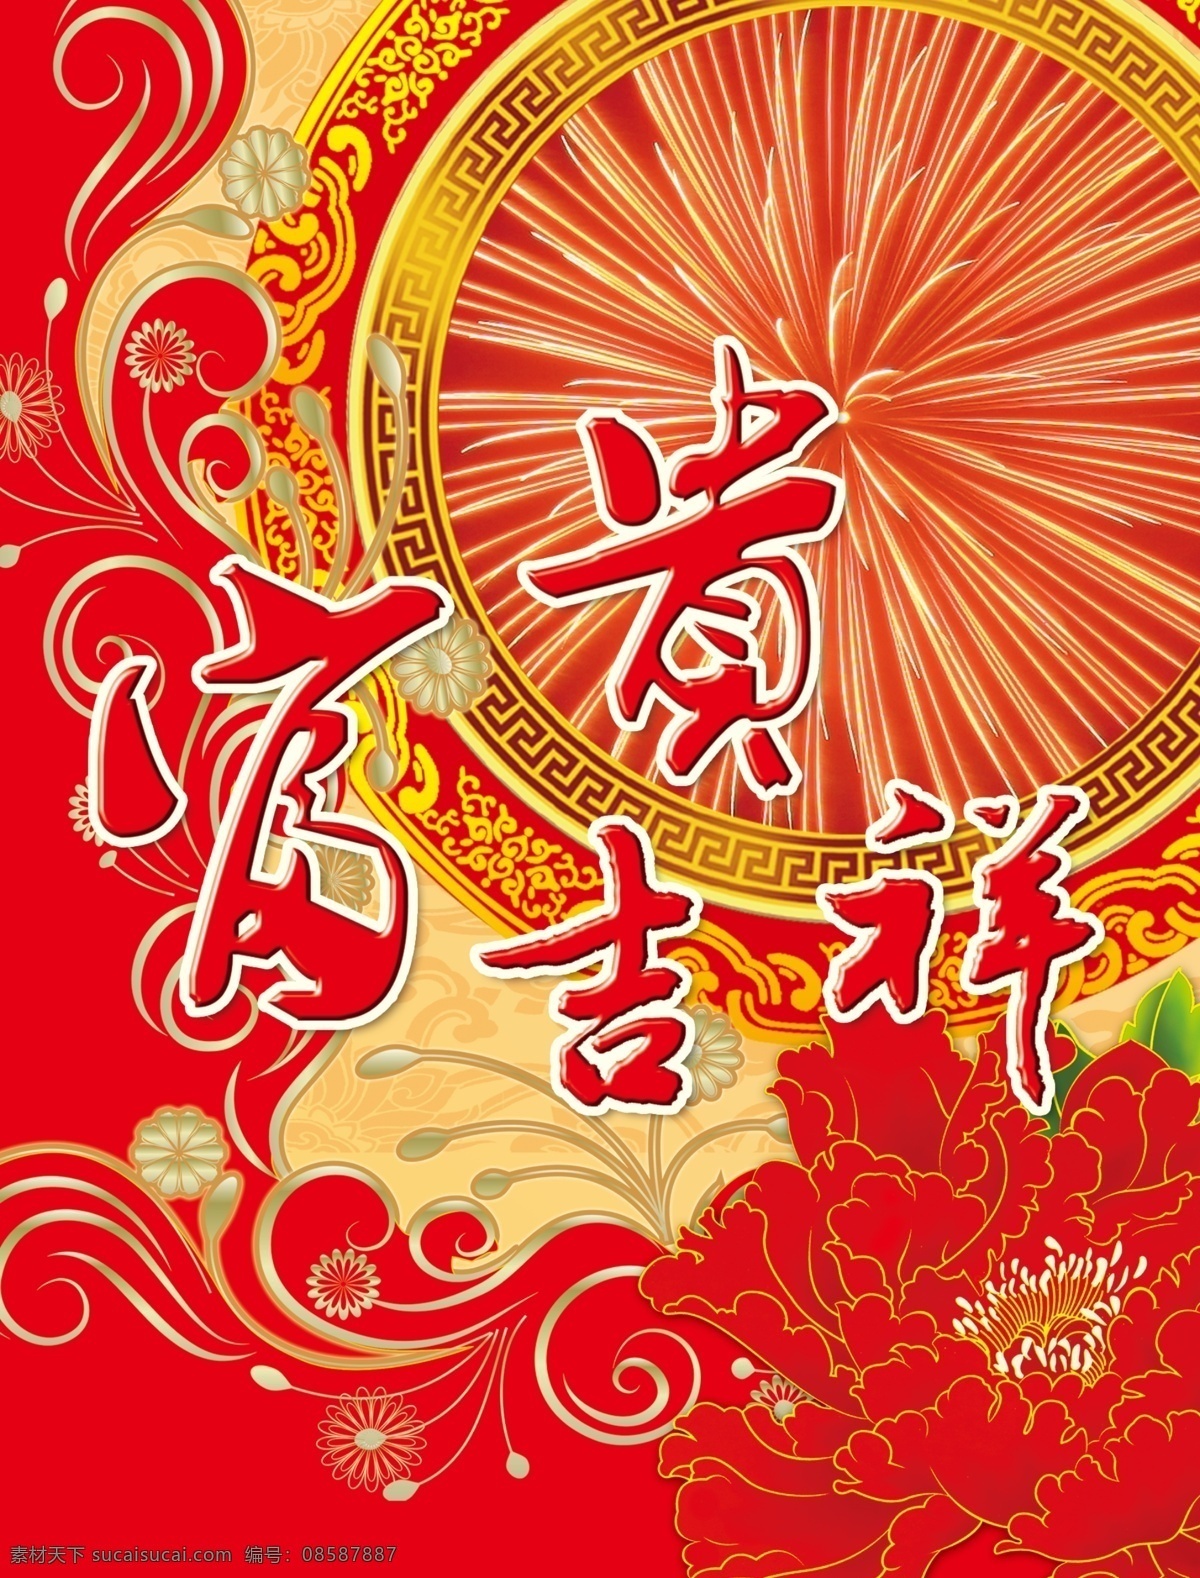 包装设计 富贵吉祥 广告设计模板 红牡丹 红色 花纹 牡丹 中国风 烟花 烟花包装 圆环 纹理 源文件 节日素材 2015羊年